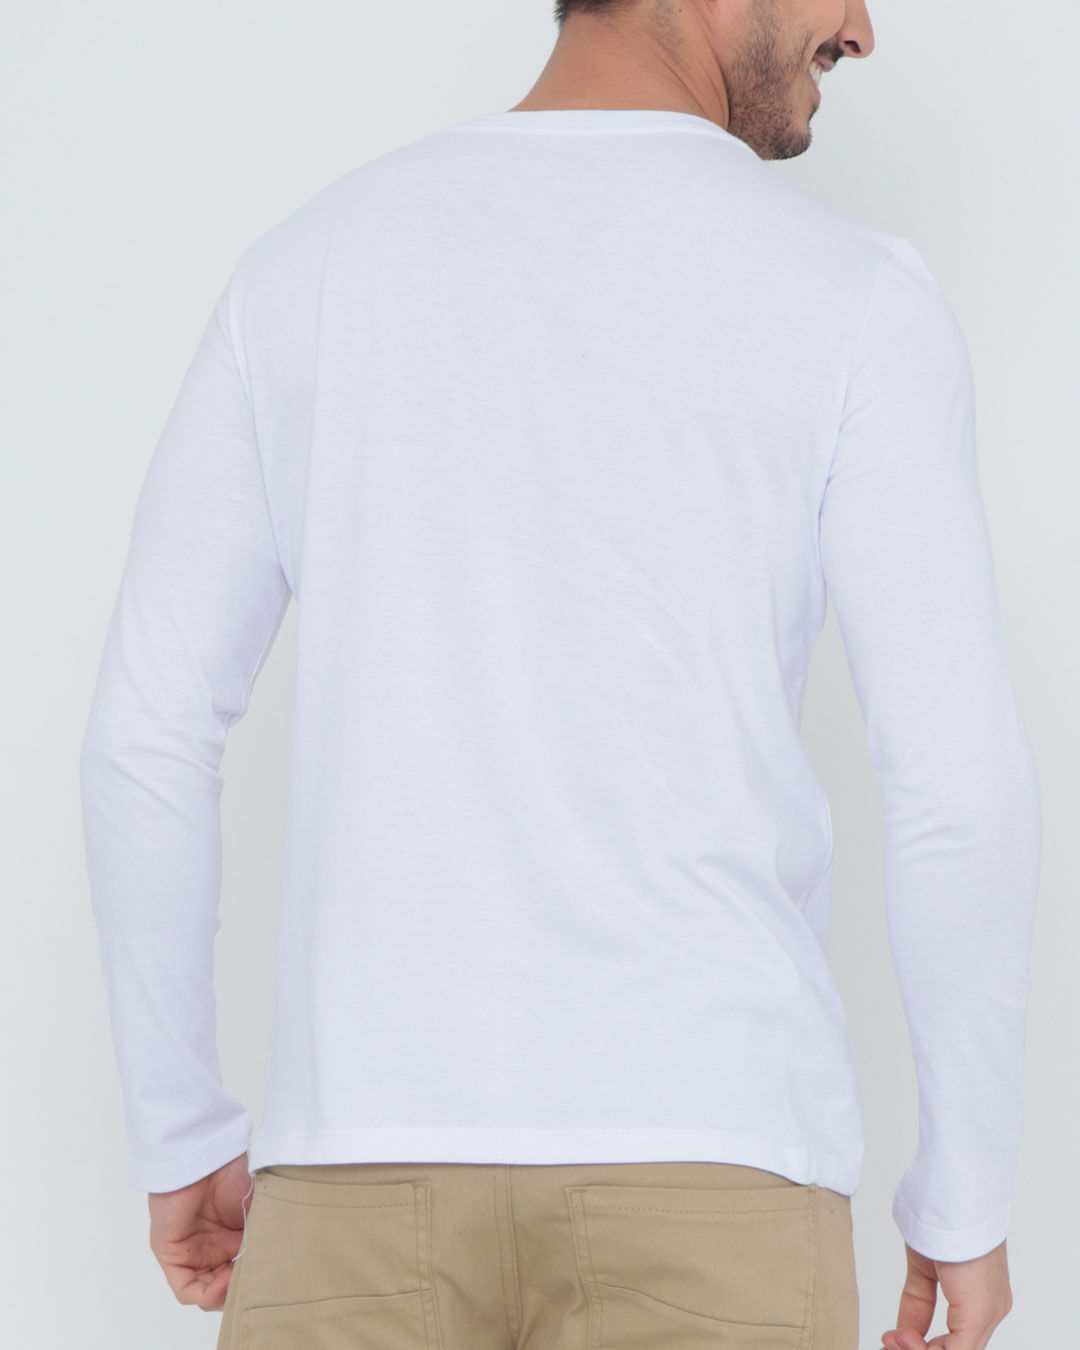 Camiseta-Ko250-G--C--Ml-Branco---Branco